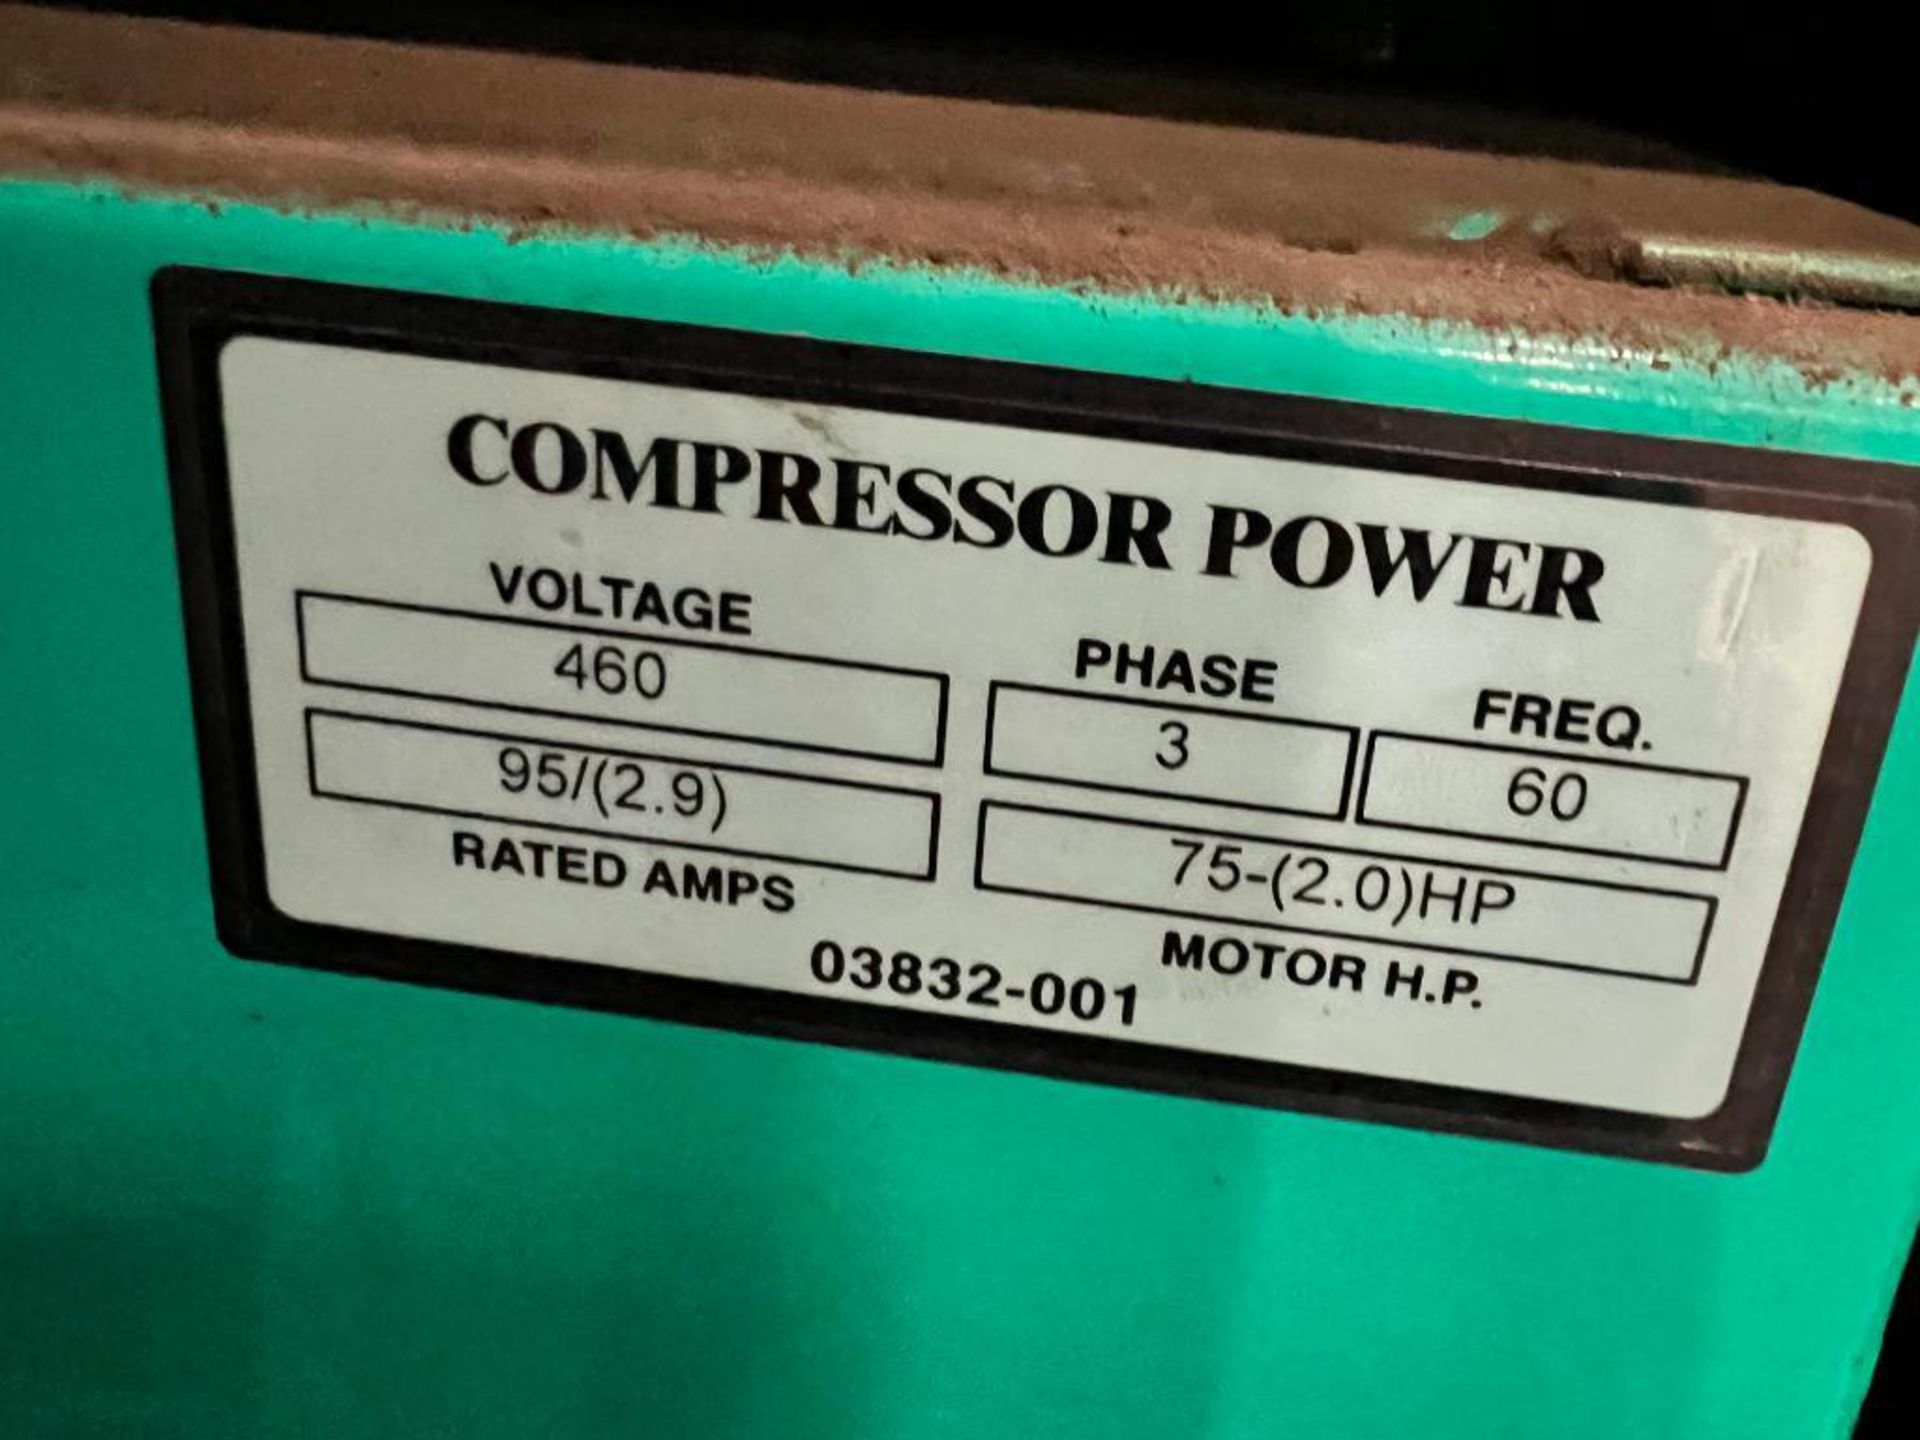 Sullivan-Palatek Air Compressor, Model SP16-75, Load PSI 105, Unload PSI 120, 3 Phase ($50 Loading f - Image 6 of 6